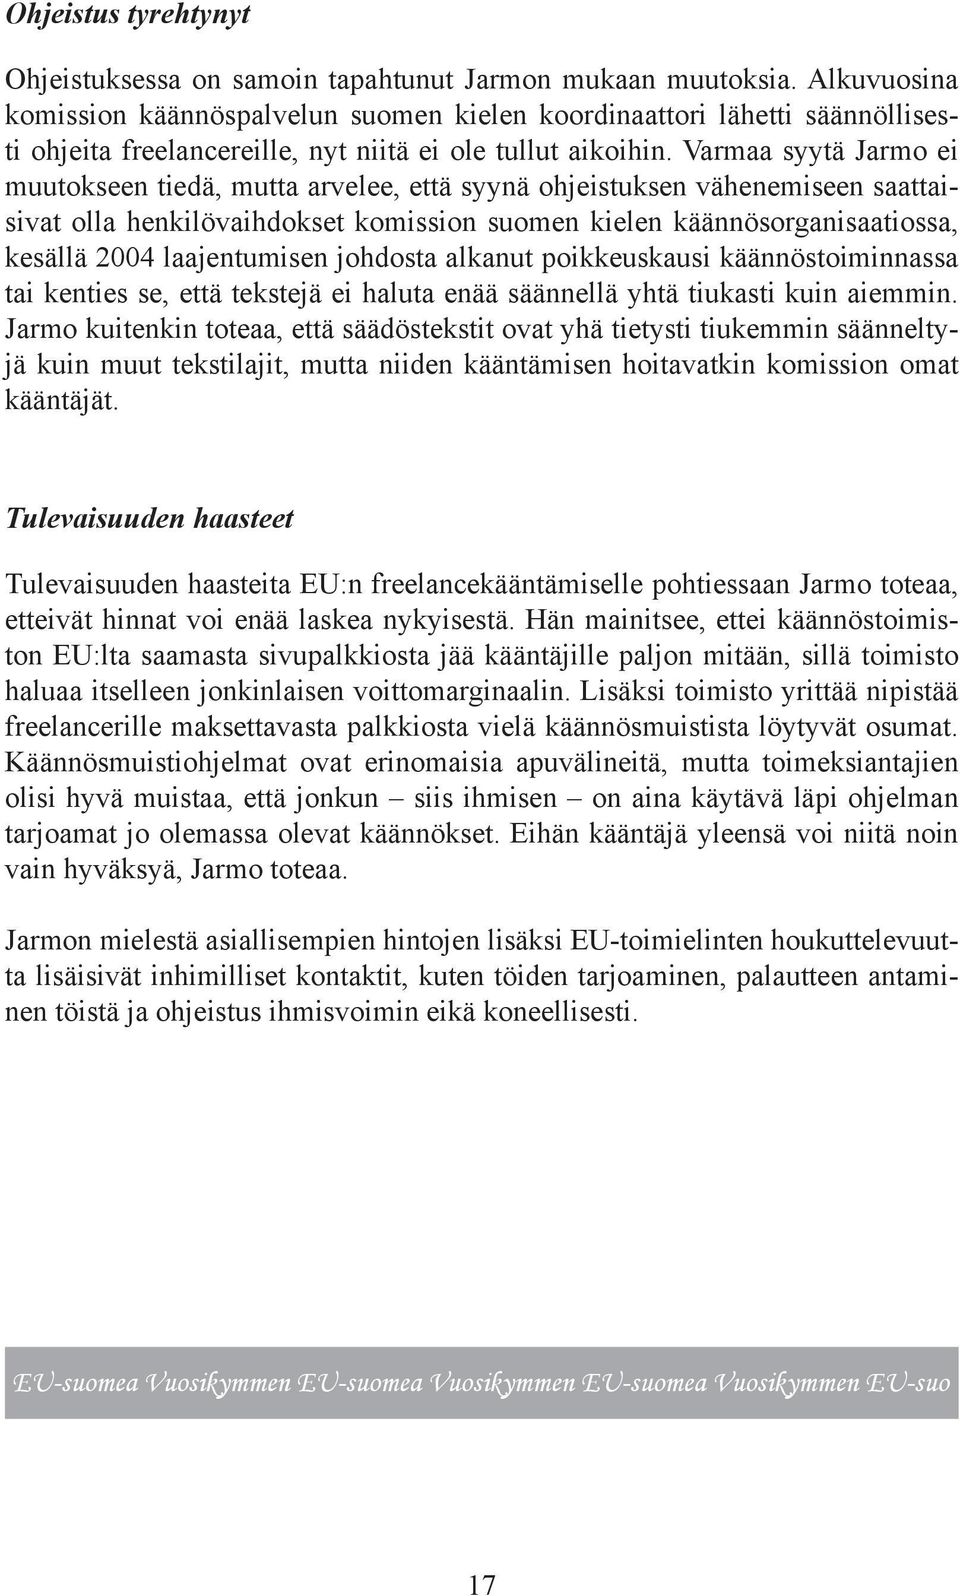 Varmaa syytä Jarmo ei muutokseen tiedä, mutta arvelee, että syynä ohjeistuksen vähenemiseen saattaisivat olla henkilövaihdokset komission suomen kielen käännösorganisaatiossa, kesällä 2004